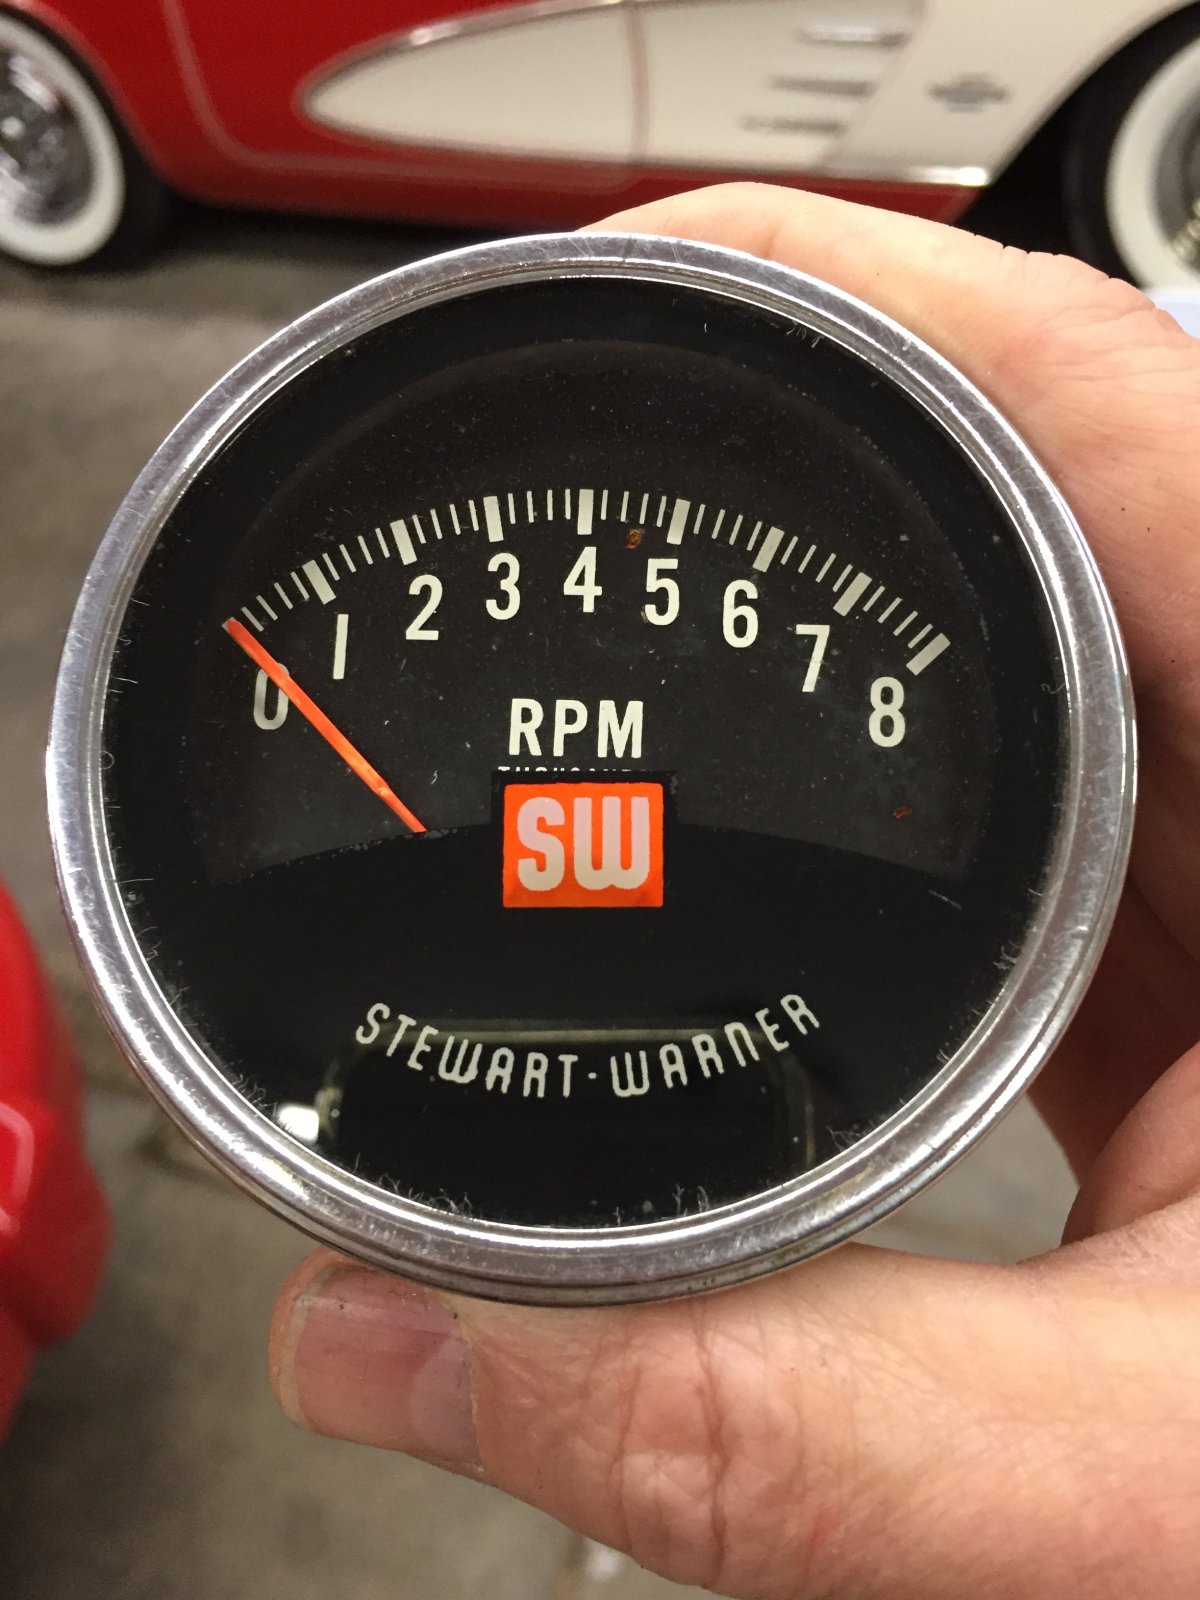 Three-In-One Automotive Gauges - Stewart Warner - automotive gauges -  Vehicle Controls